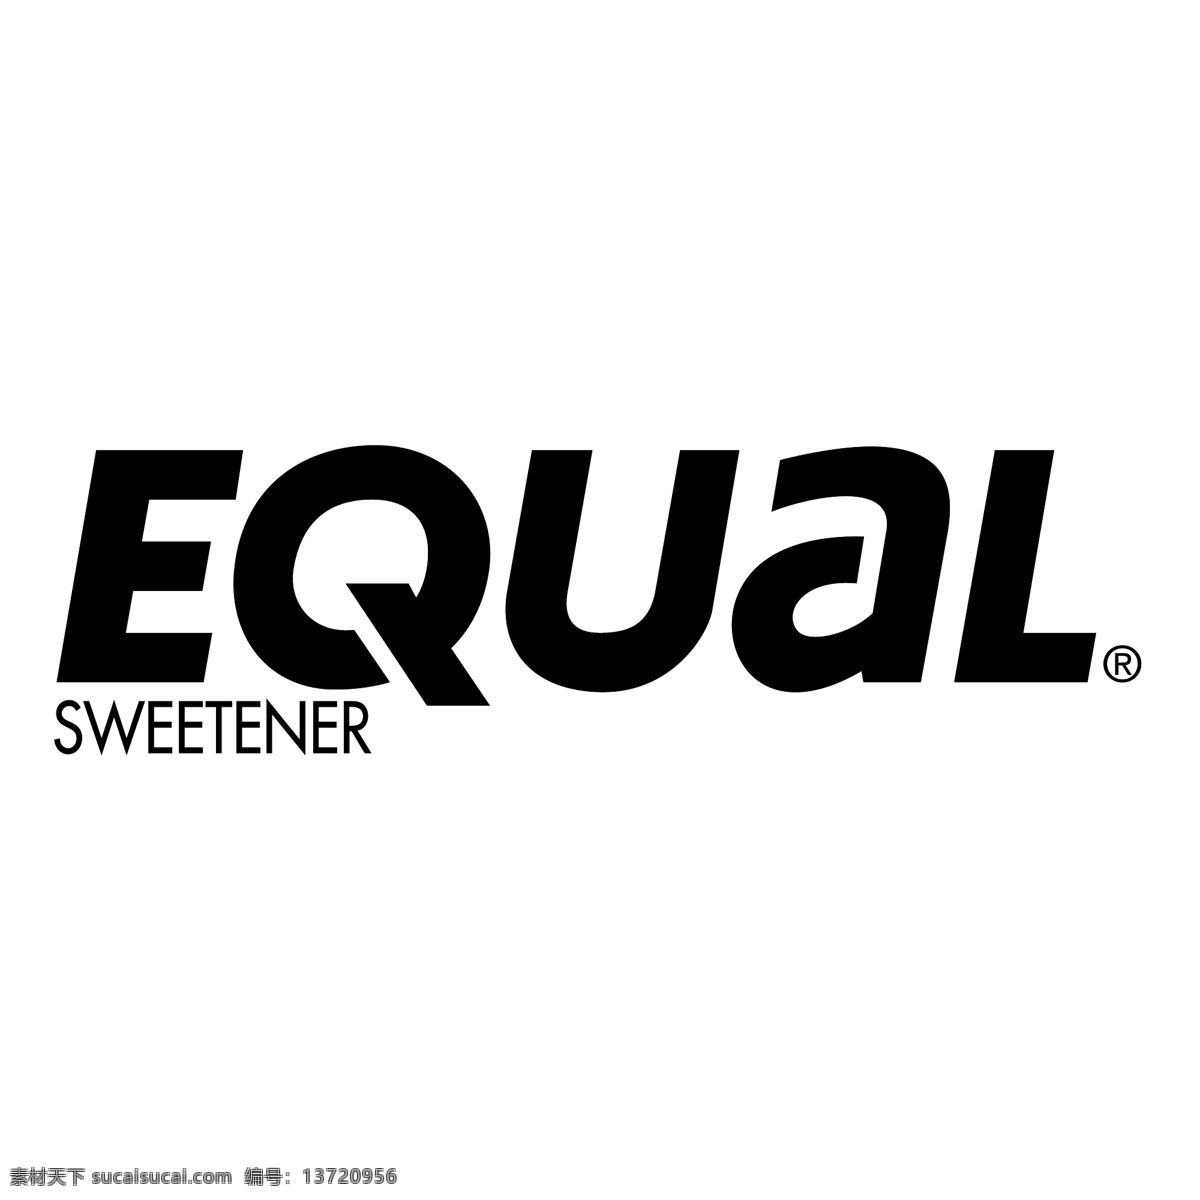 平等的甜味剂 矢量标志 相同的 相等的甜味剂 甜味剂 相等的矢量 等于 向量相等的 平等的载体 平等的eps 向量等于 向量 平等 权利 平等相等 矢量 矢量等于 标志等 相当于 矢量图 建筑家居